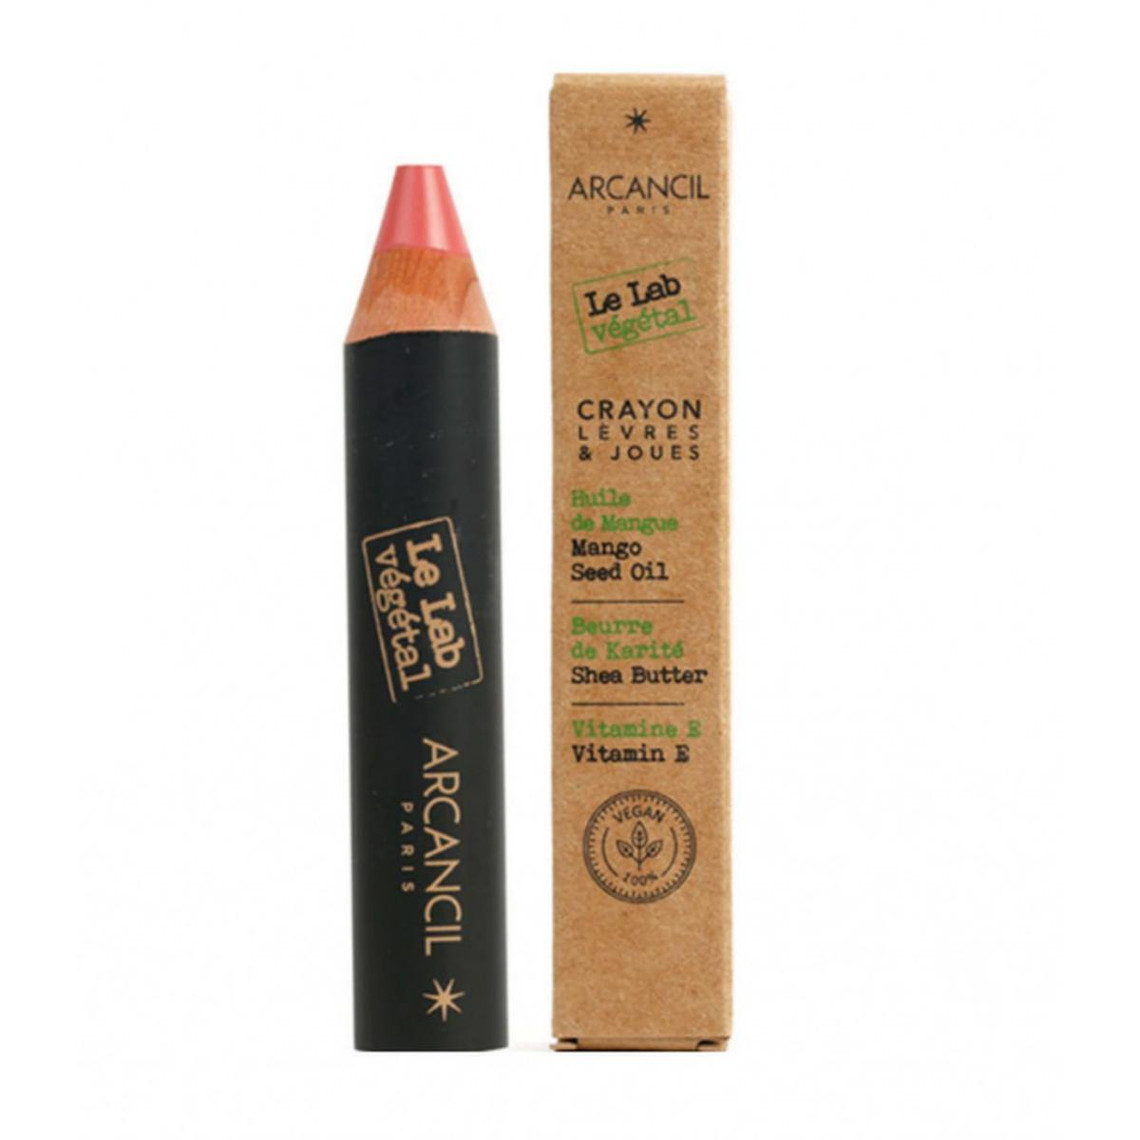 Crayon Pour Les Lèvres & Les Joues - Rose Litchi